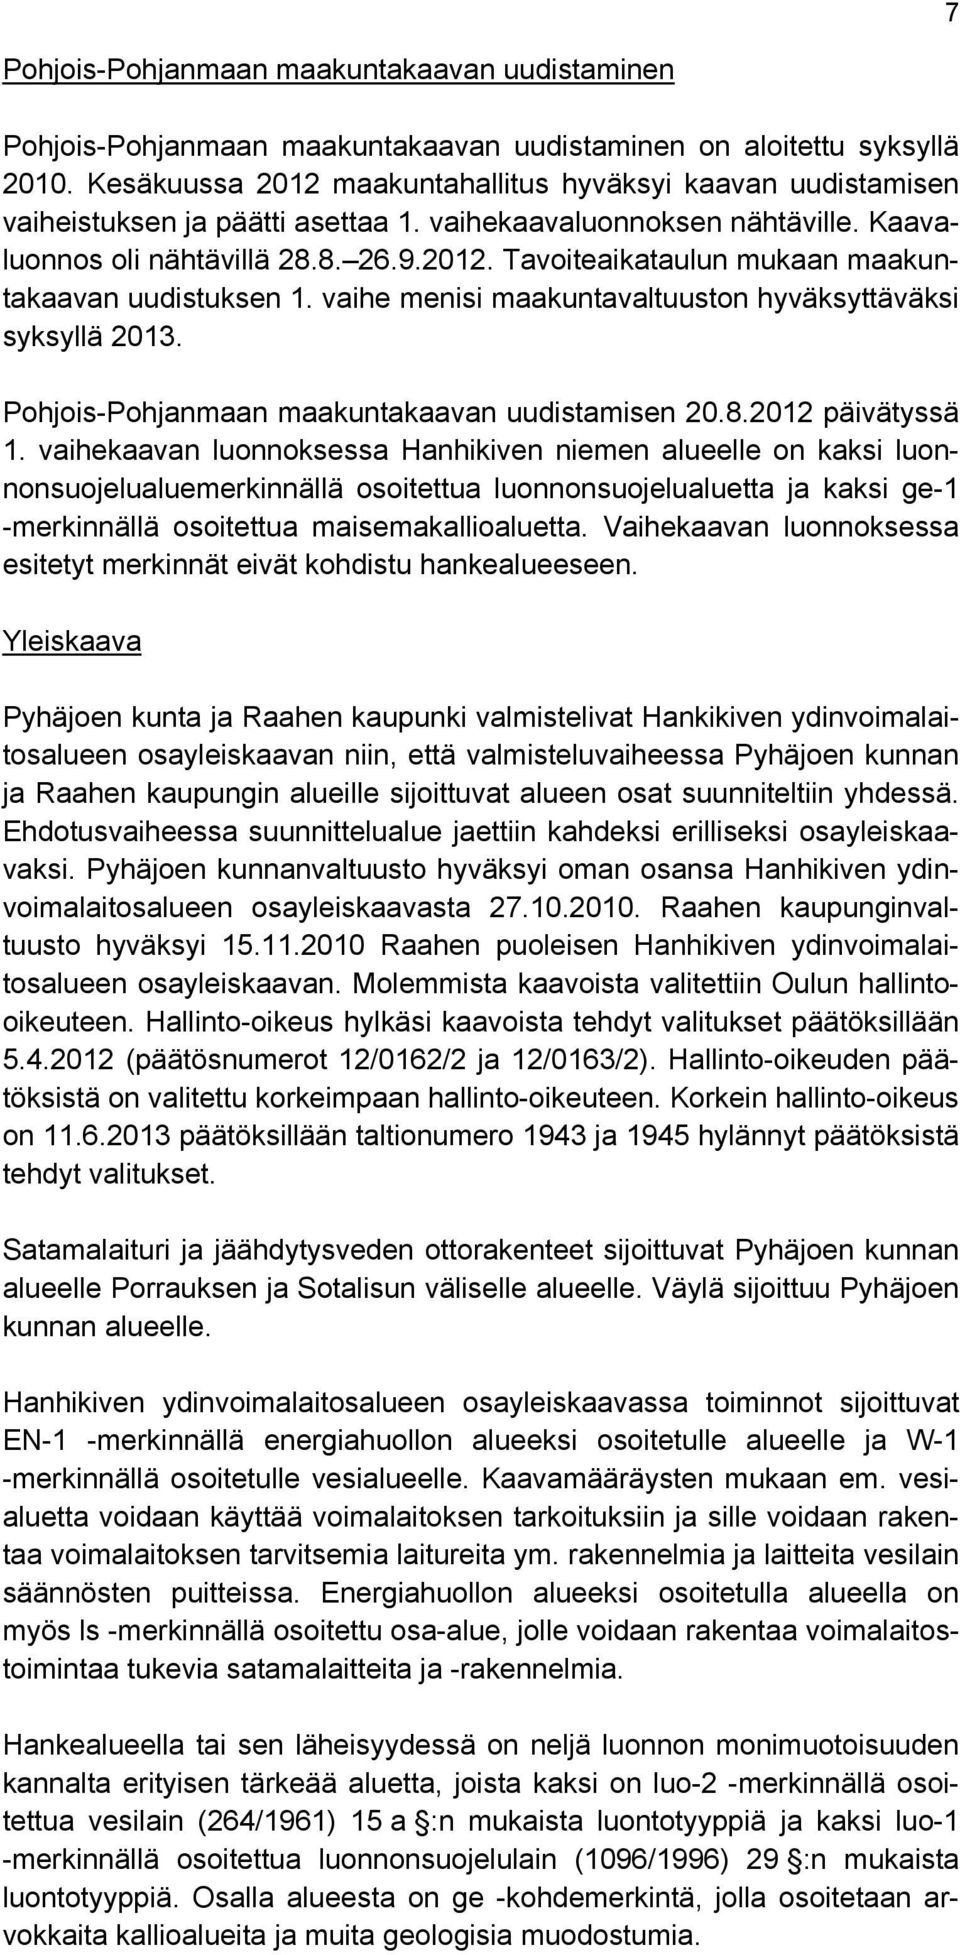 vaihe menisi maakuntavaltuuston hyväksyttäväksi syksyllä 2013. Pohjois-Pohjanmaan maakuntakaavan uudistamisen 20.8.2012 päivätyssä 1.